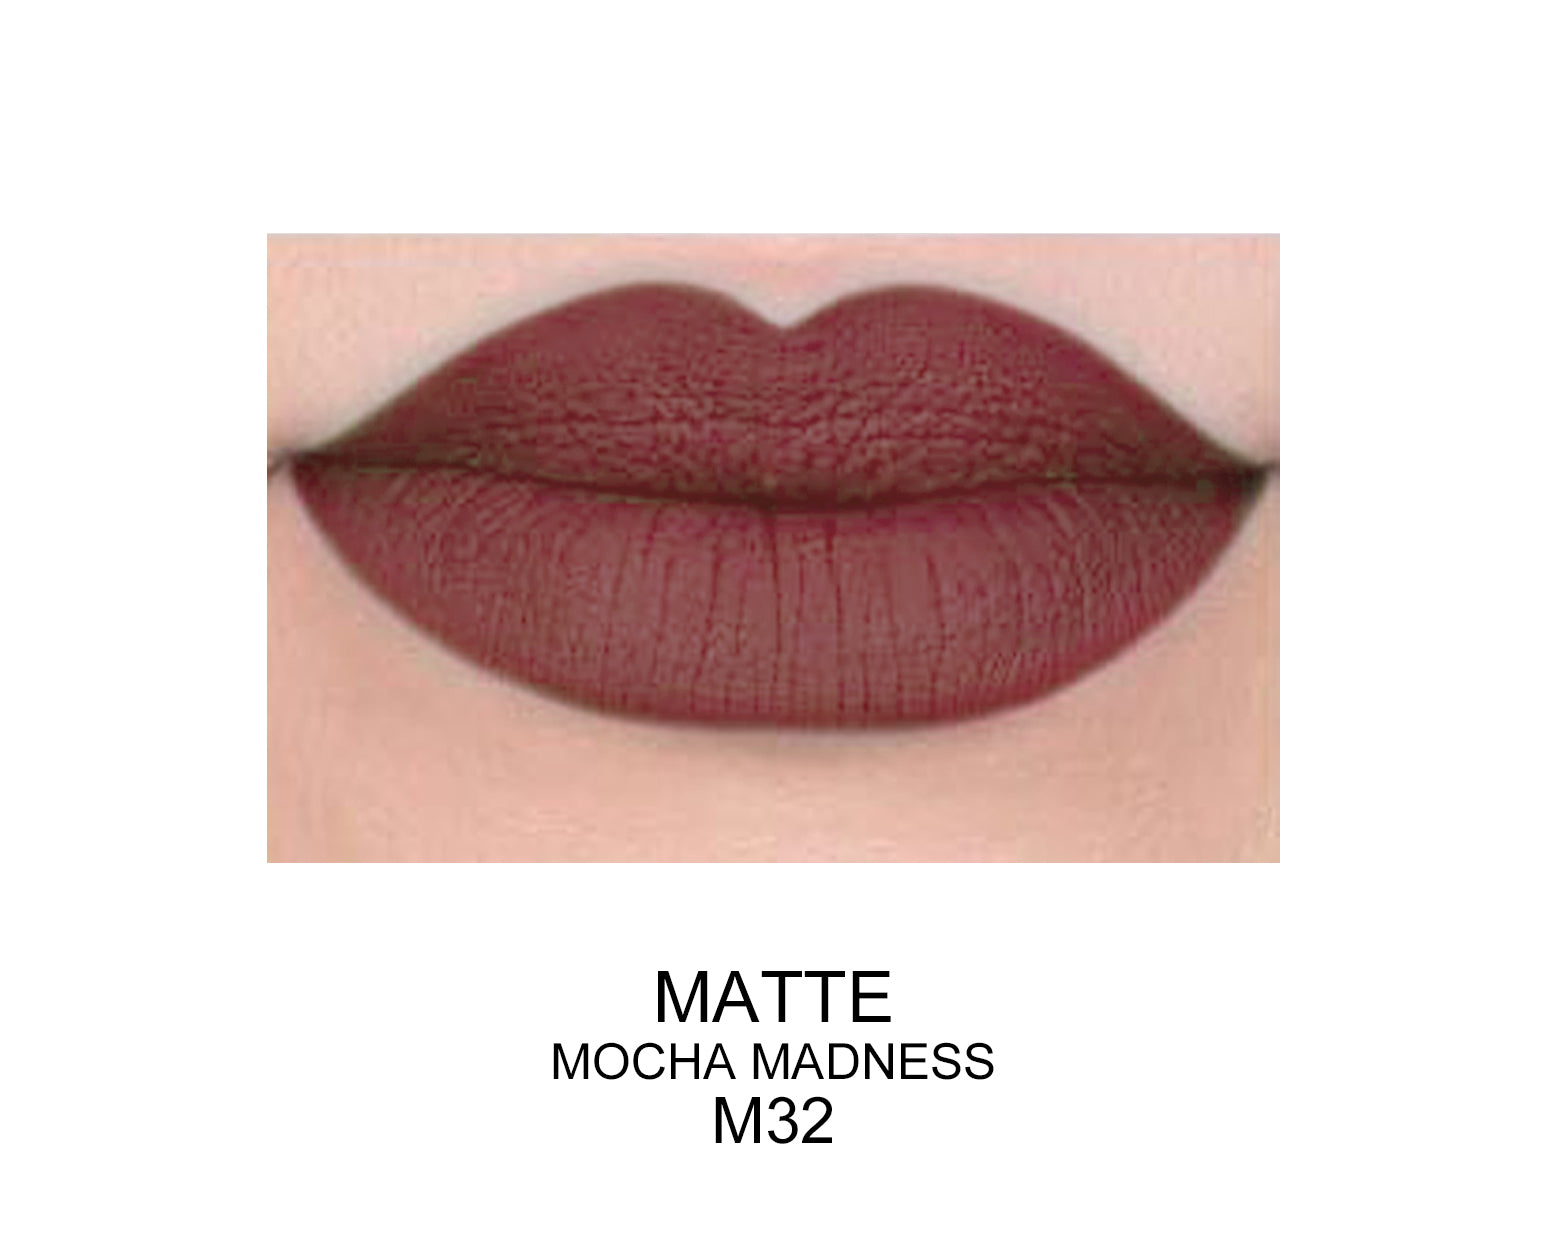 Long Lasting Matte Lip Gloss matte mocha madness m32